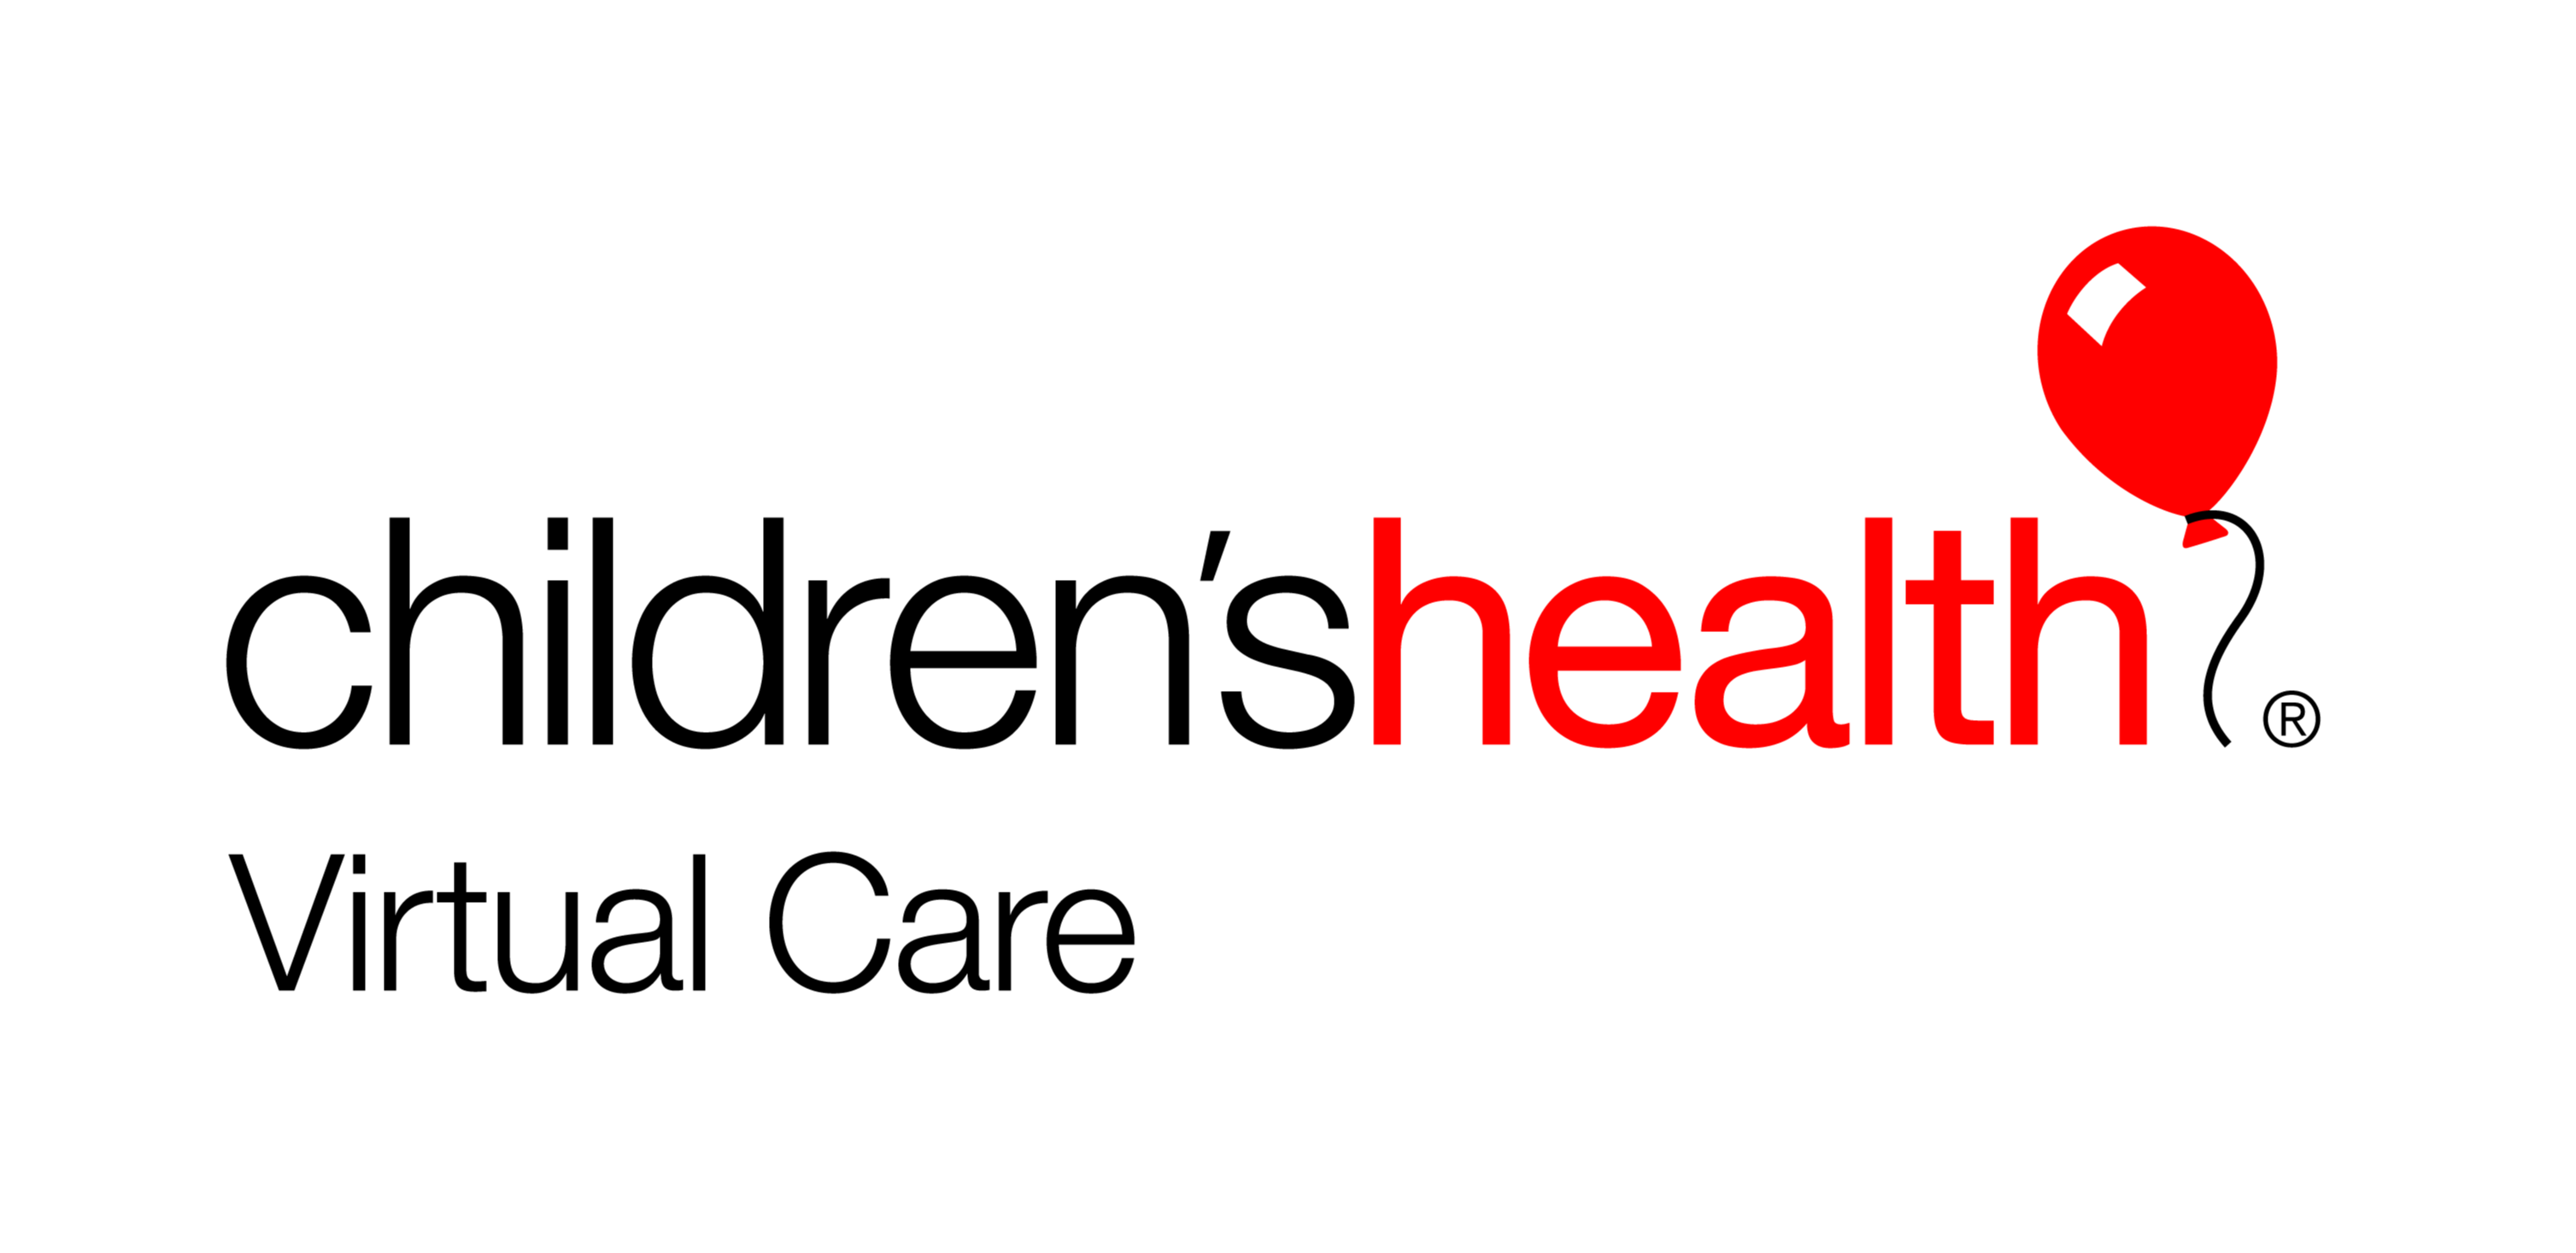 Children's Health Logo